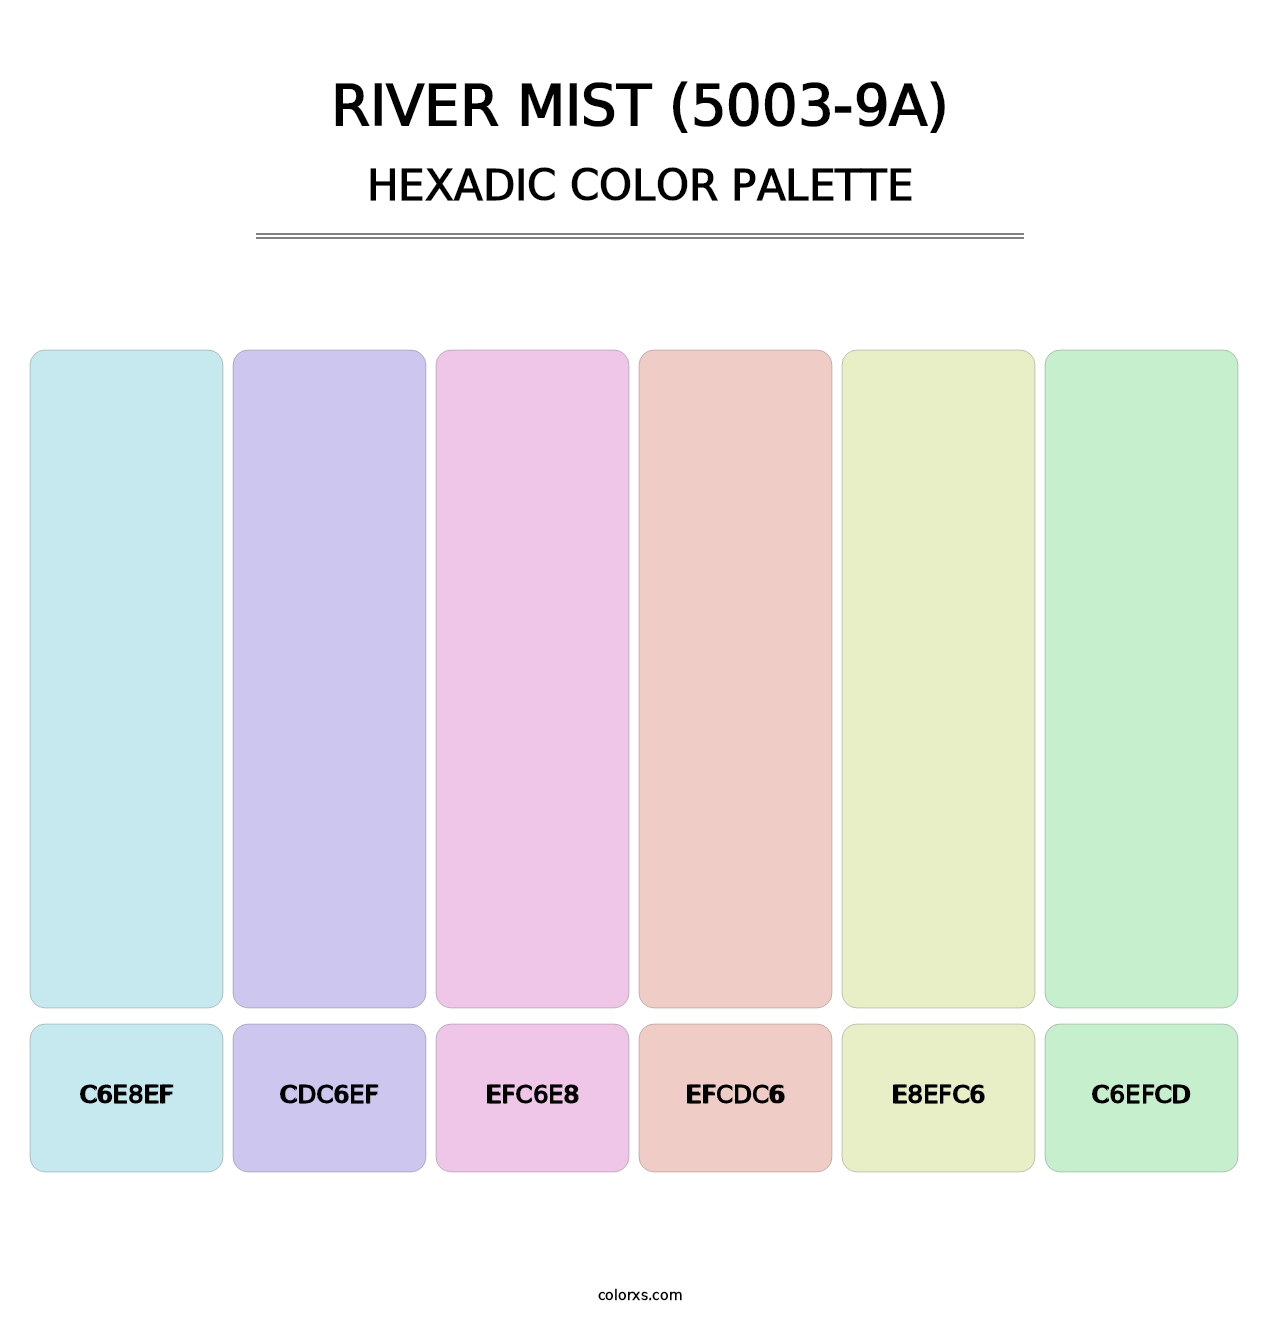 River Mist (5003-9A) - Hexadic Color Palette